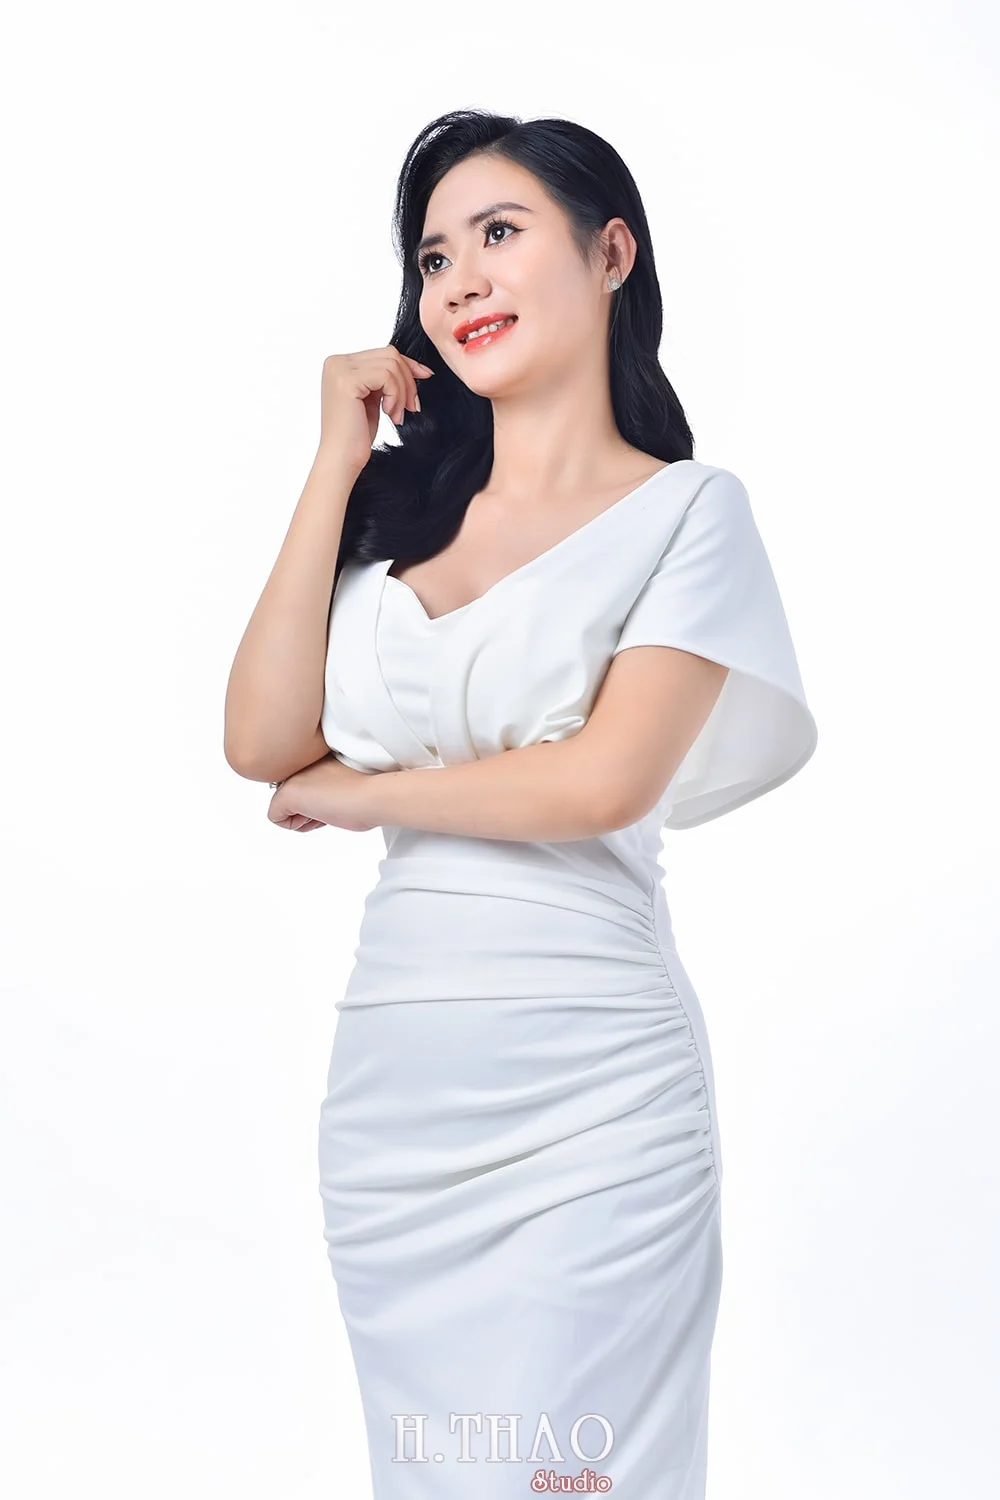 Anh doanh nhan nu 6 min 1 - Album ảnh doanh nhân nữ phong cách beauty đẹp- HThao Studio